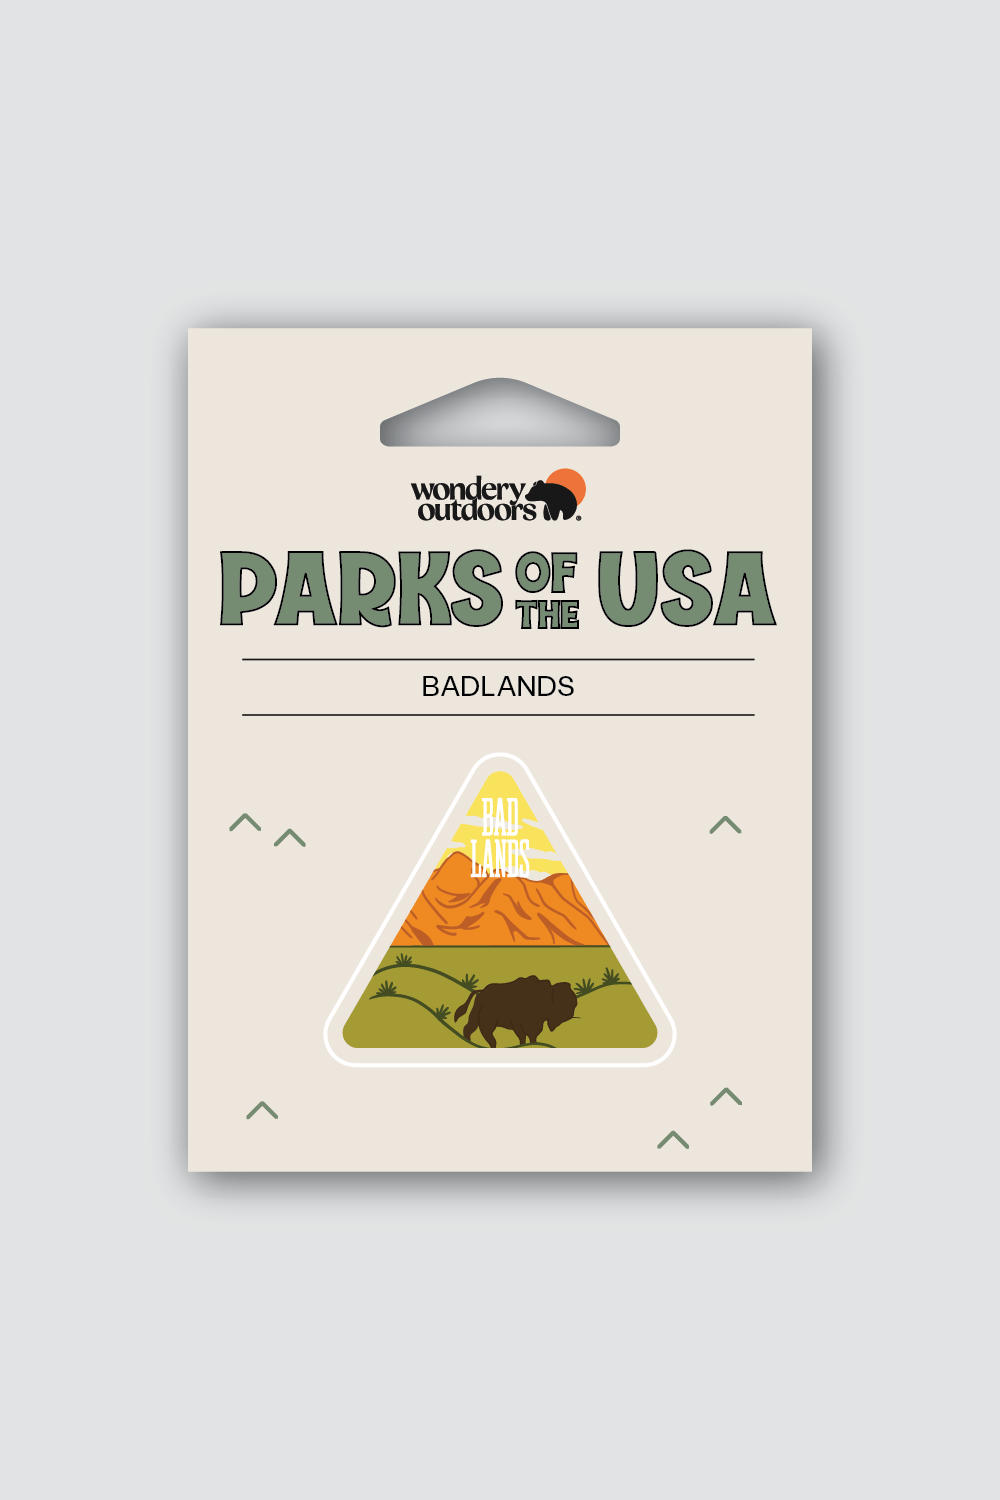 #national park_badlands _USA National Parks souvenir sticker gift sets